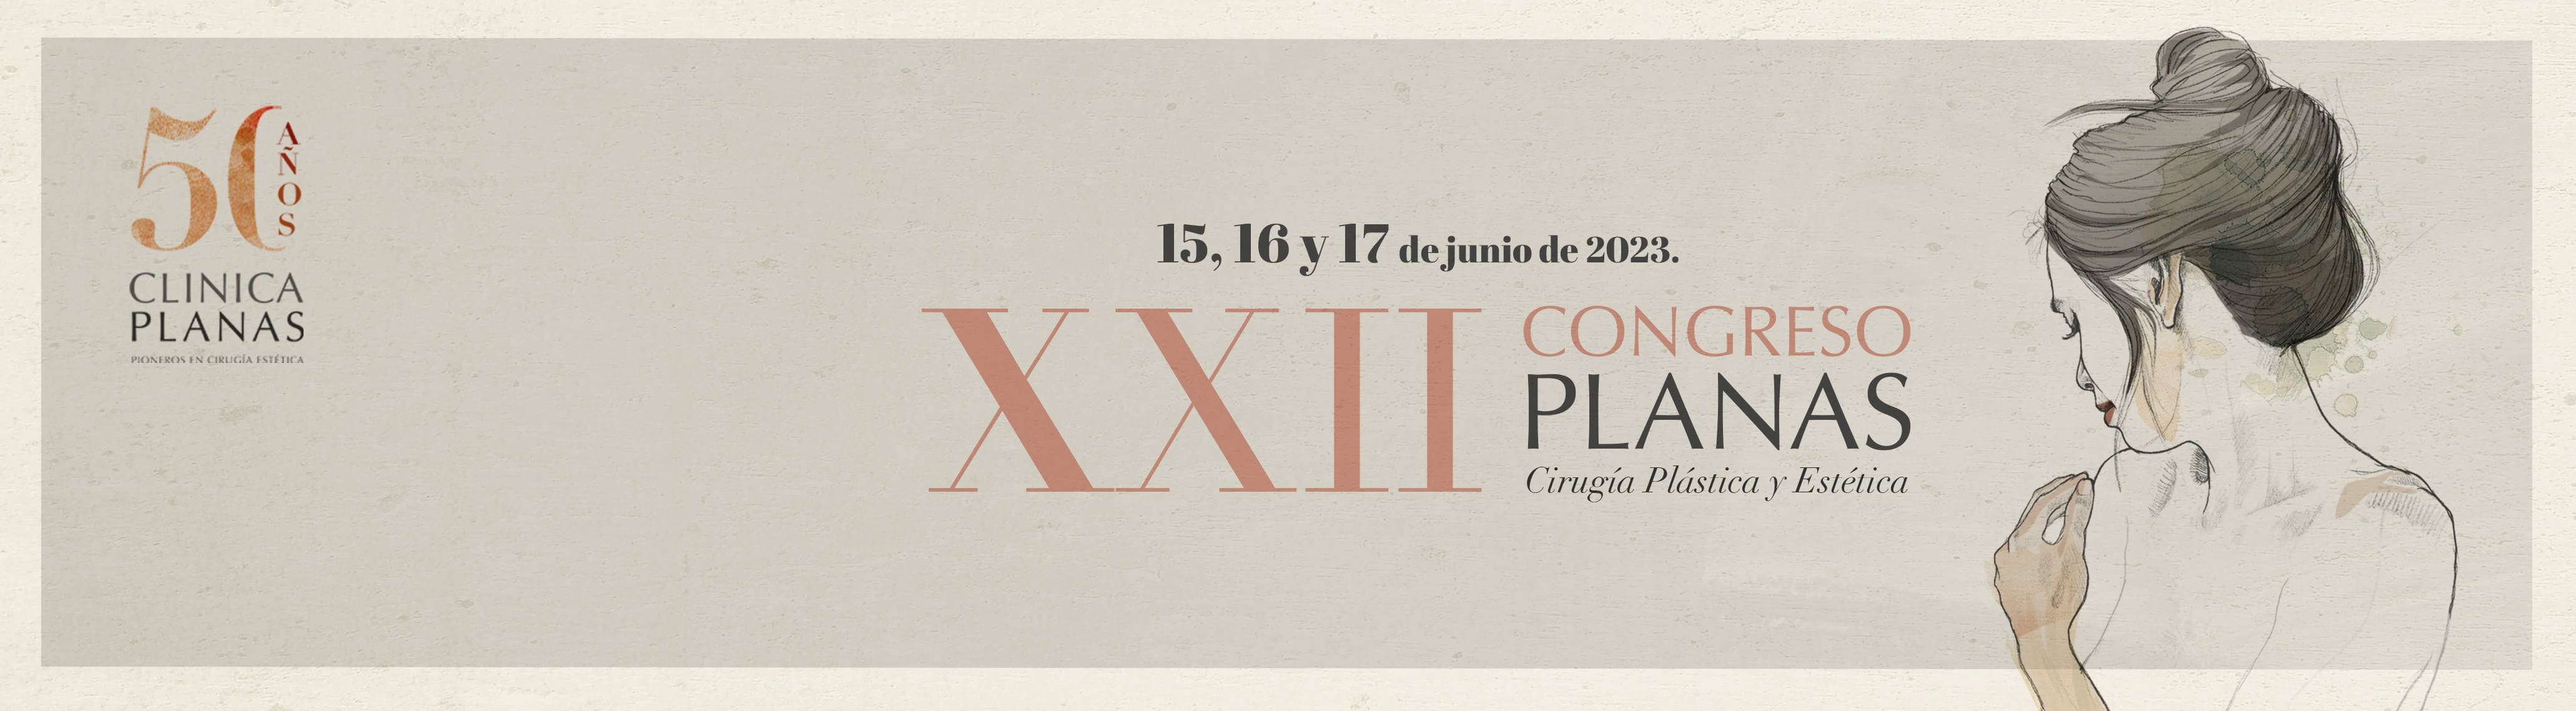 XXII Congreso Planas